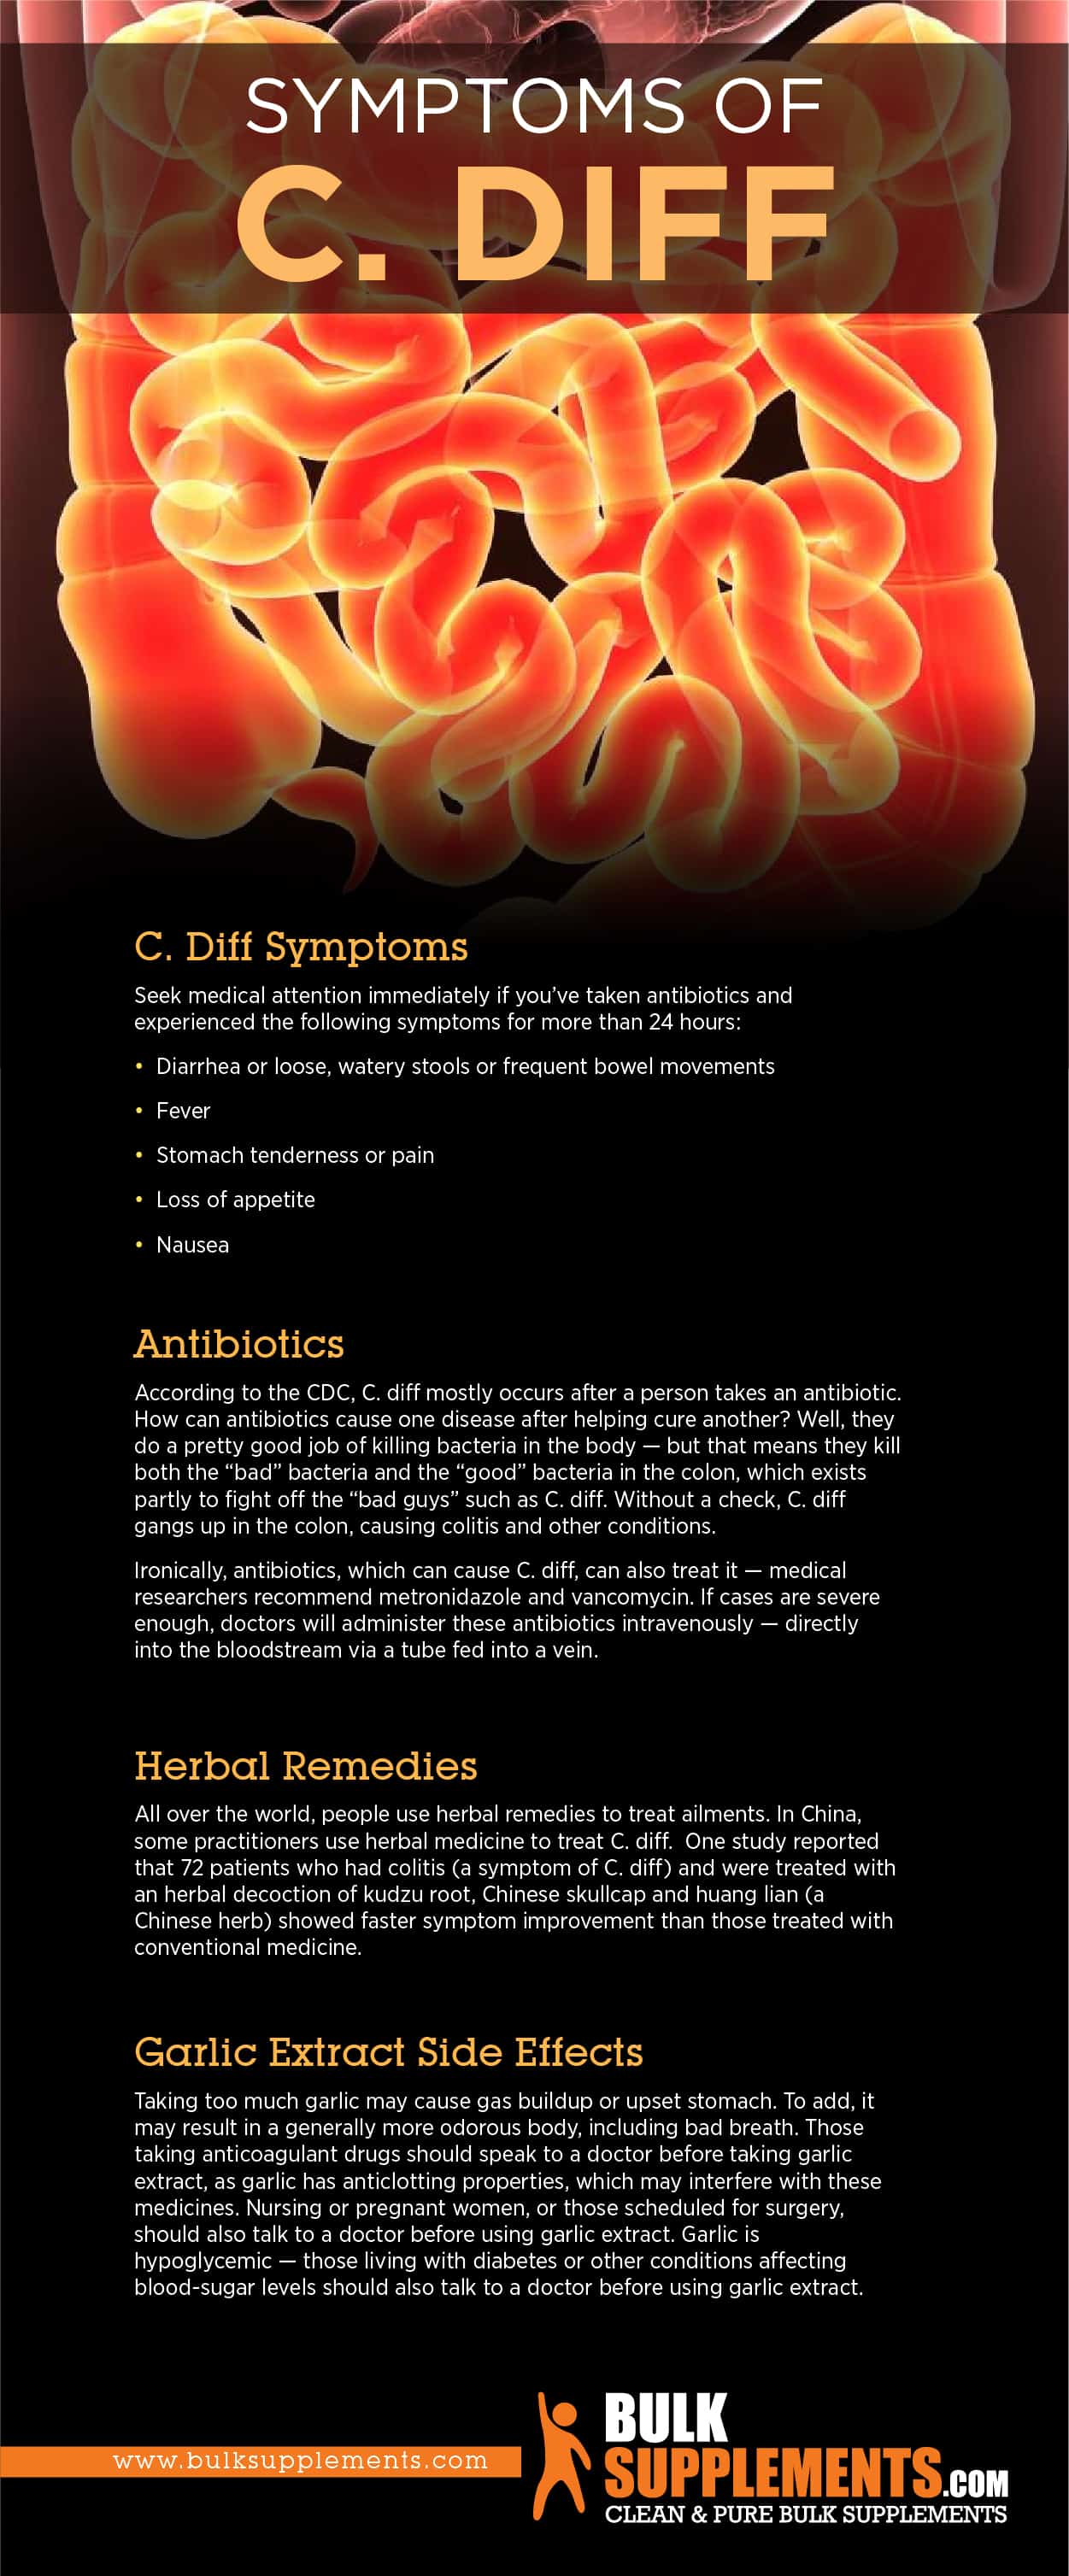 C. Diff Symptoms